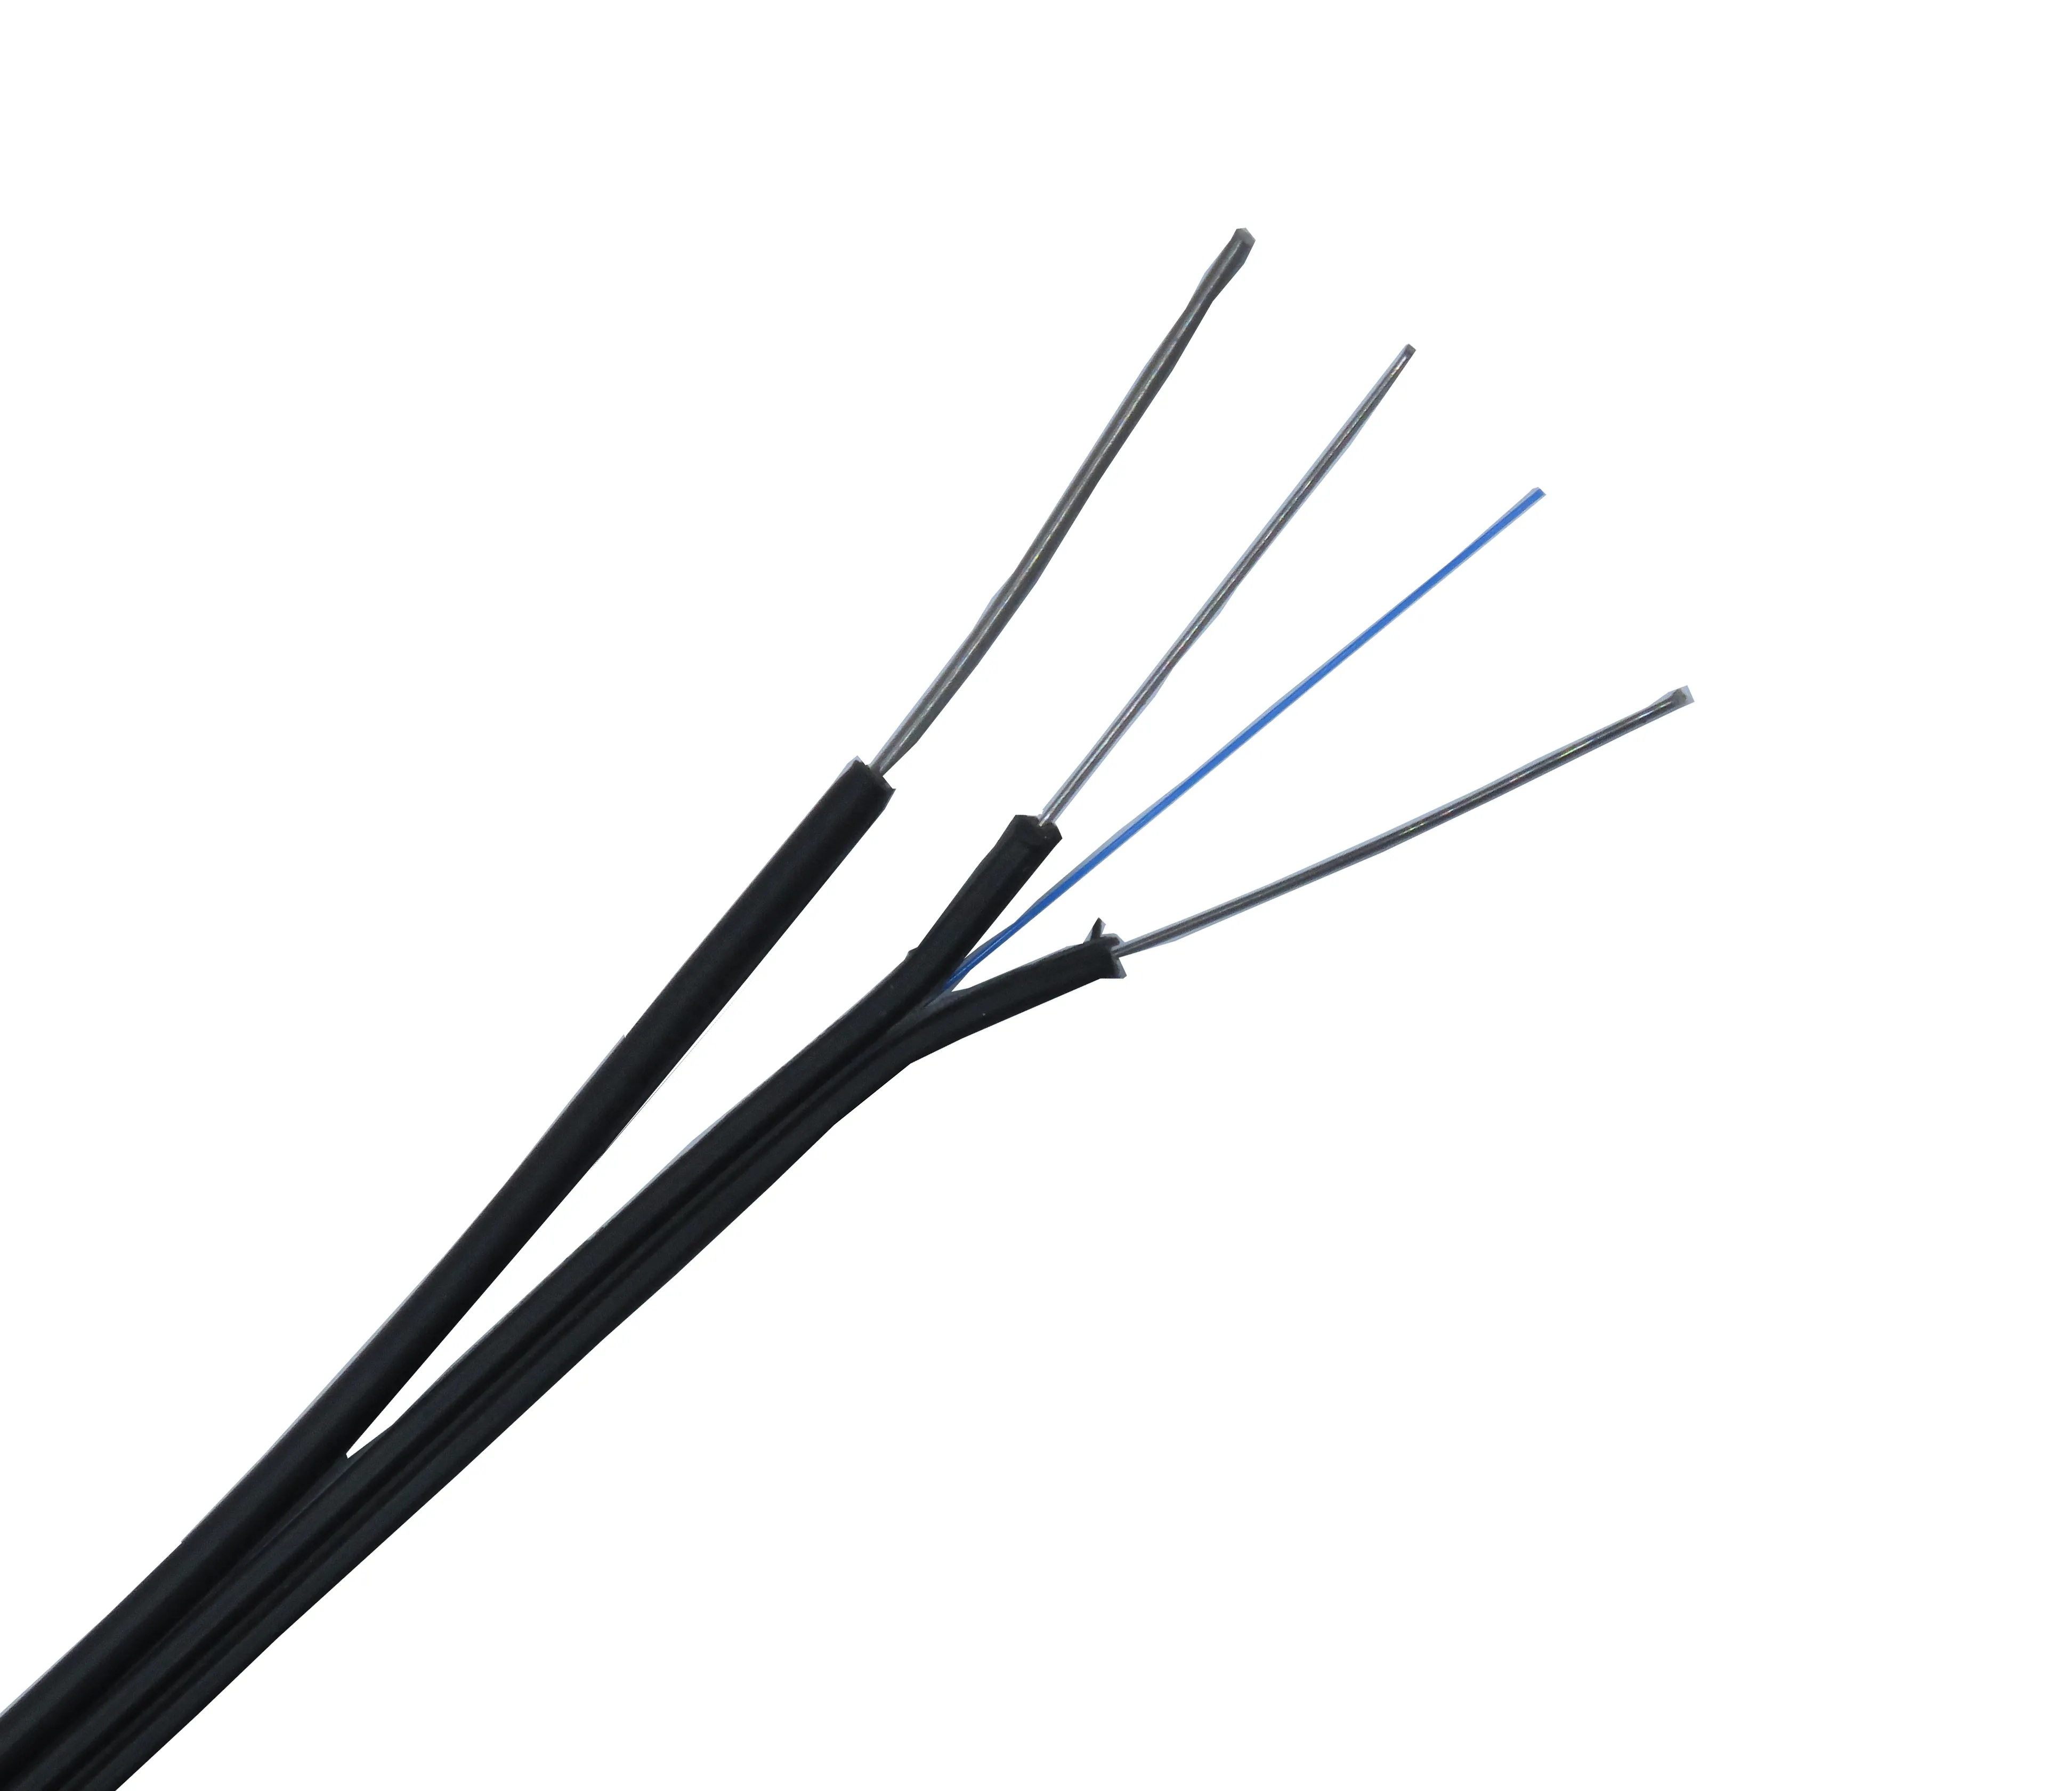 Açık tek modlu kendinden destekli FTTH bow-tipi saplama kablo Fiber optik kablo fiyatı metre başına FTTH saplamalı kablo saplama kablo